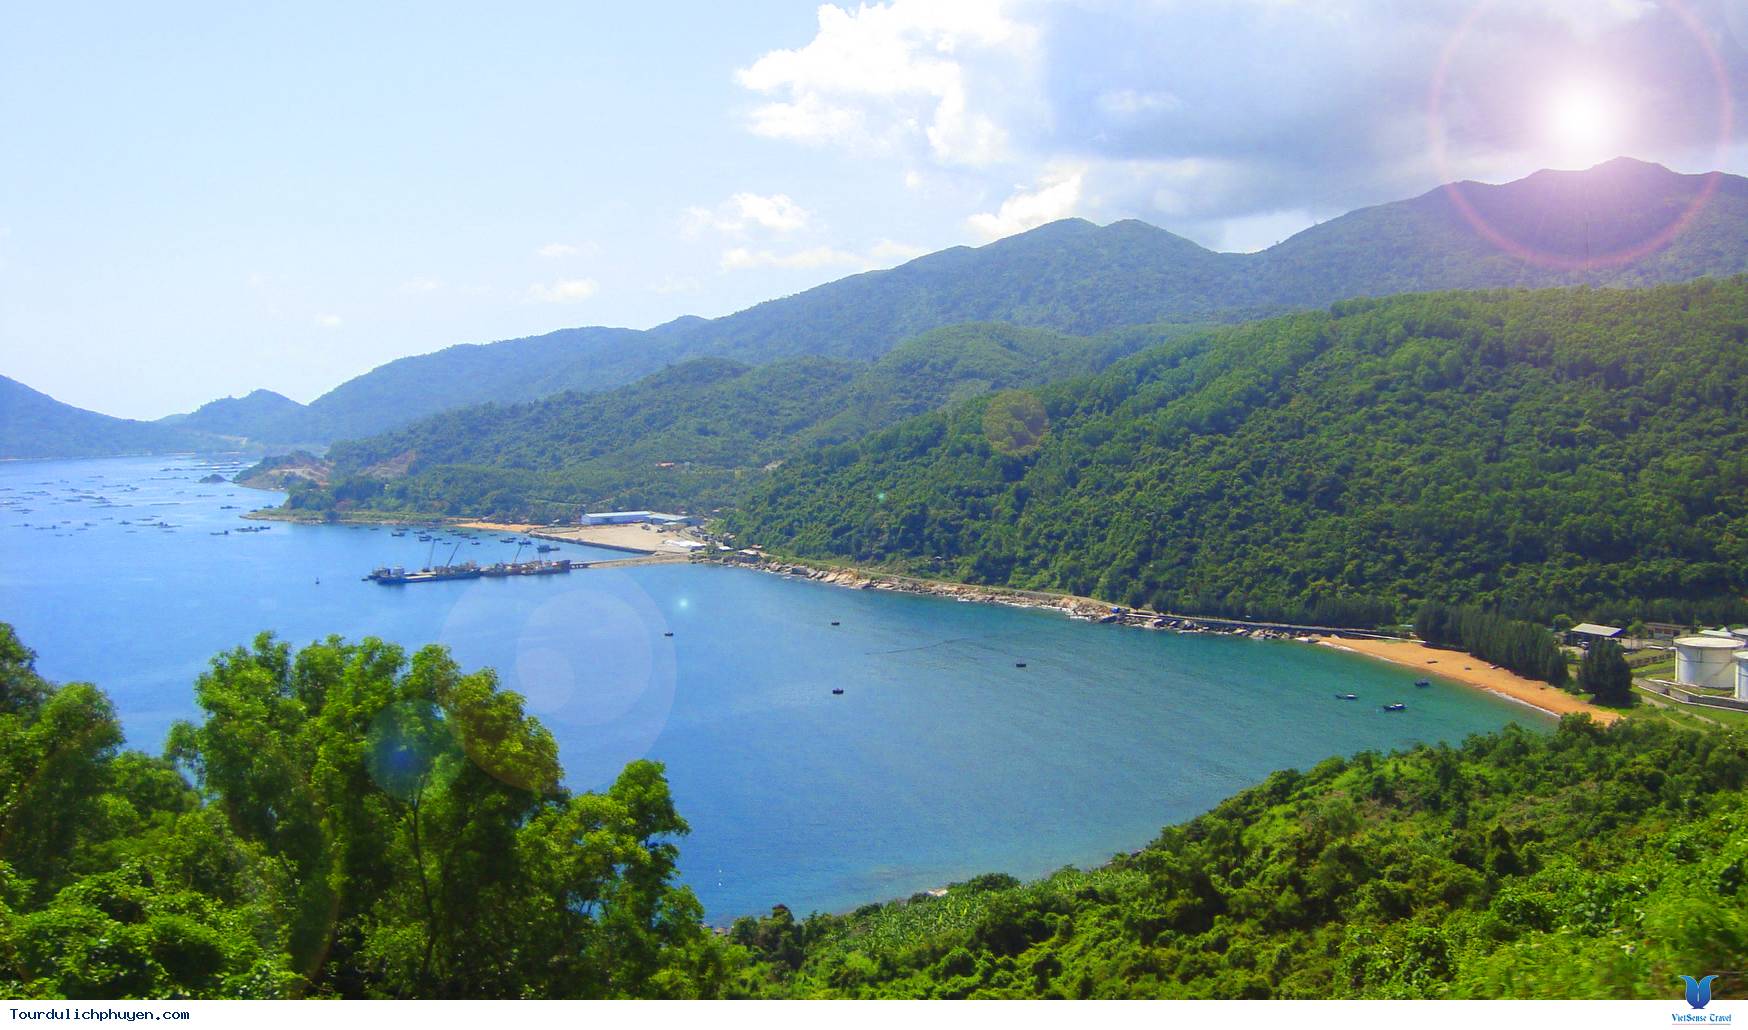 Từ đèo Cả ngắm nhìn vịnh Vũng Rô bạn sẽ thấy một quang cảnh thiên nhiên non nước biển trời đẹp xinh đầy sức quyến rũ